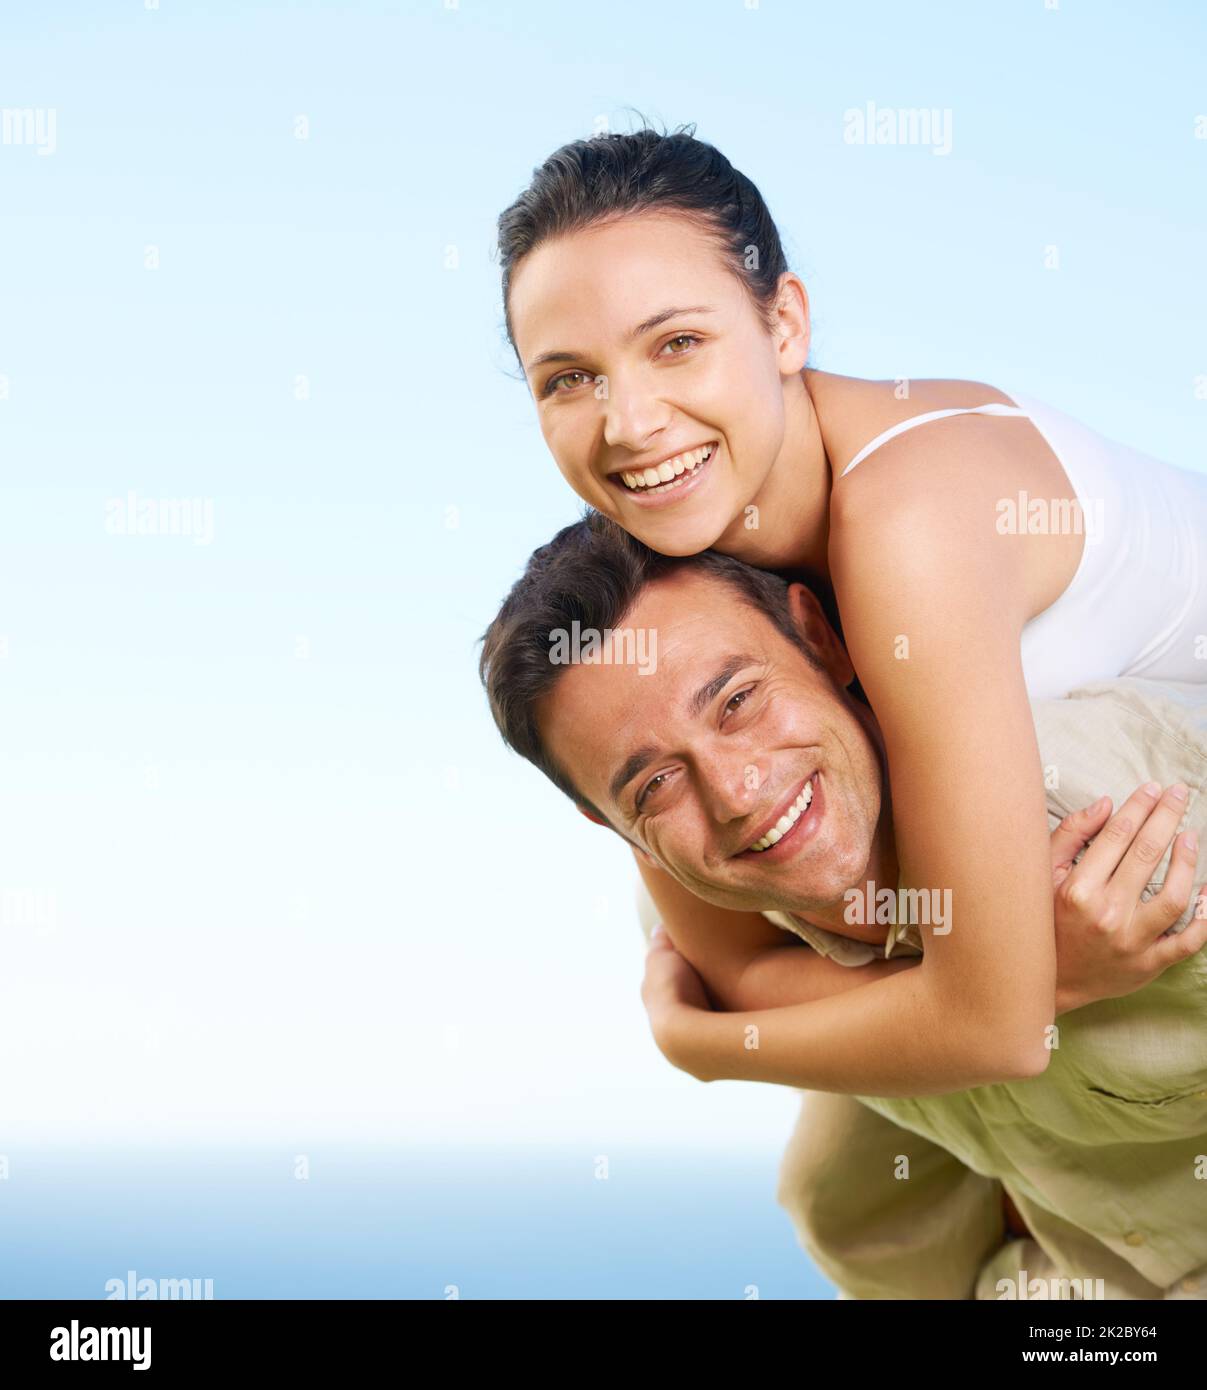 Godendo la loro vacanza. Un giovane che dà alla sua ragazza un piggyback con l'oceano sullo sfondo. Foto Stock